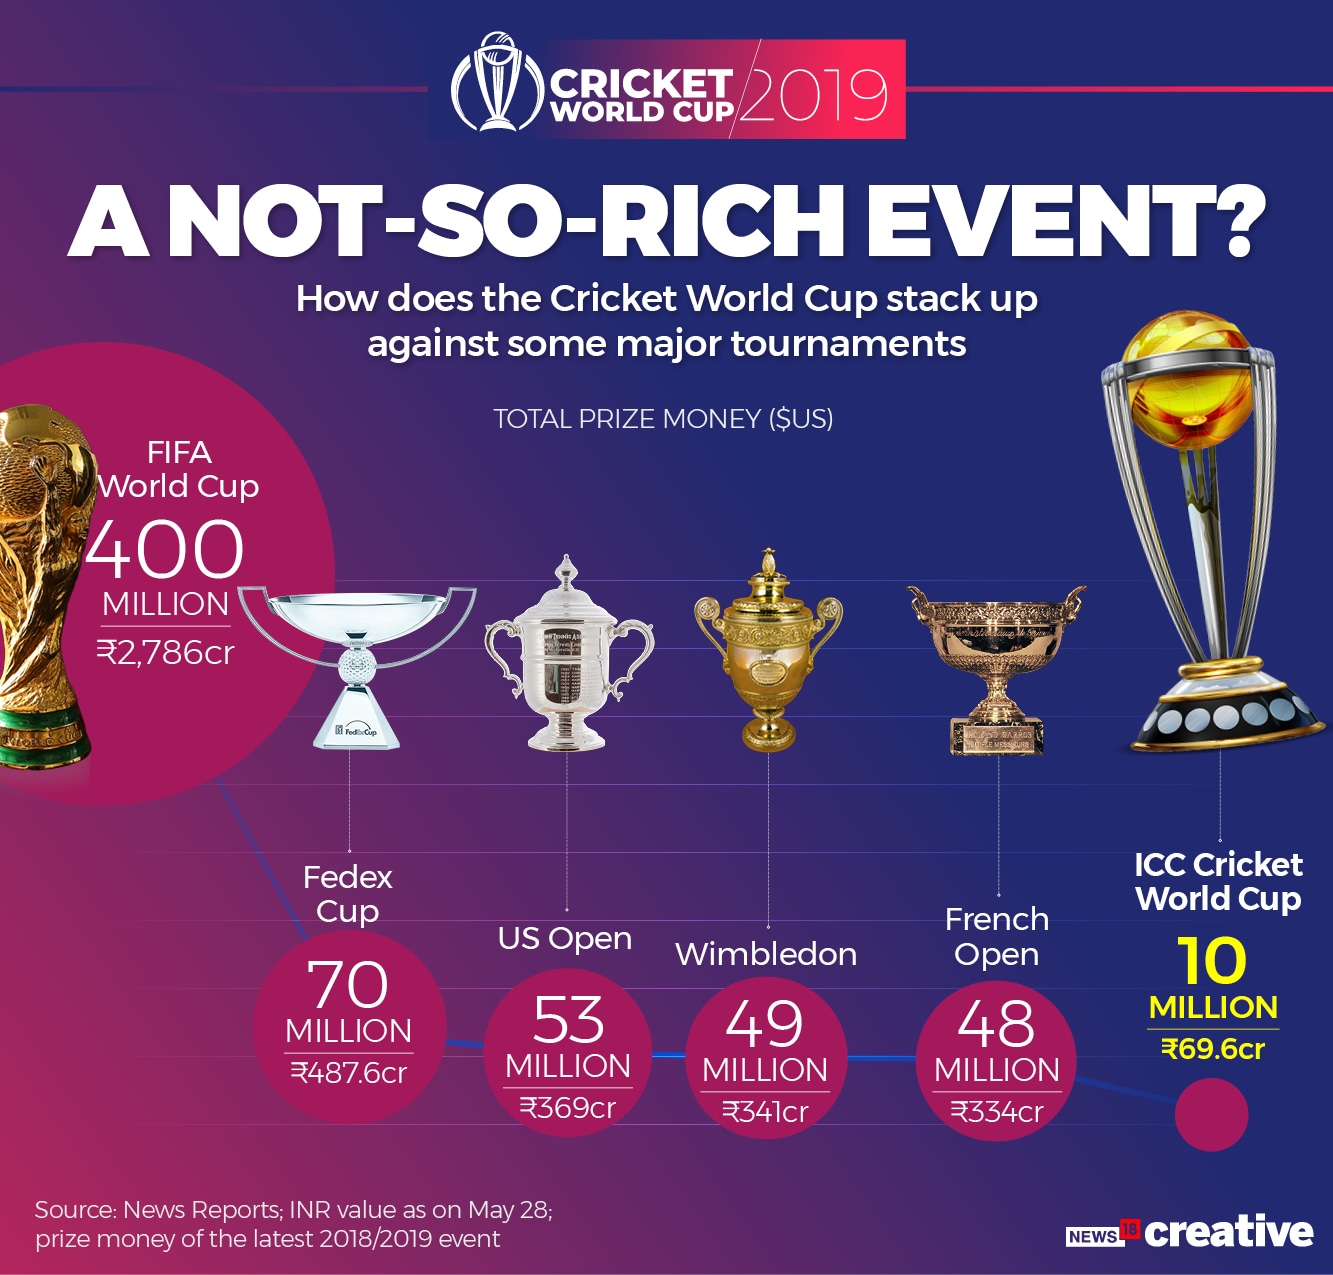 Cricket World Cup 2023 Prize Money Final Winner Runnersup